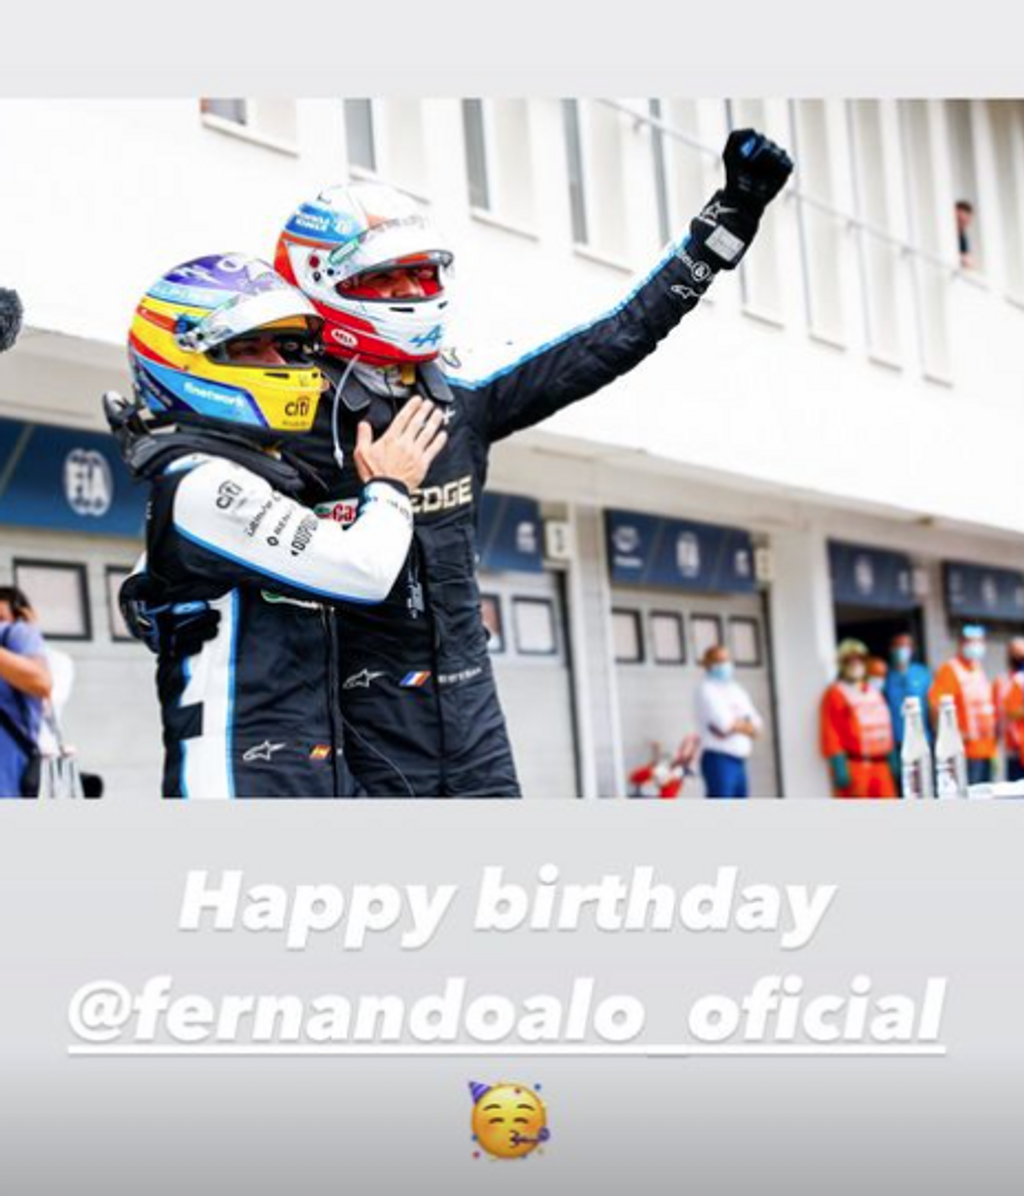 La Fórmula 1 felicita a Alonso por su cumpleaños